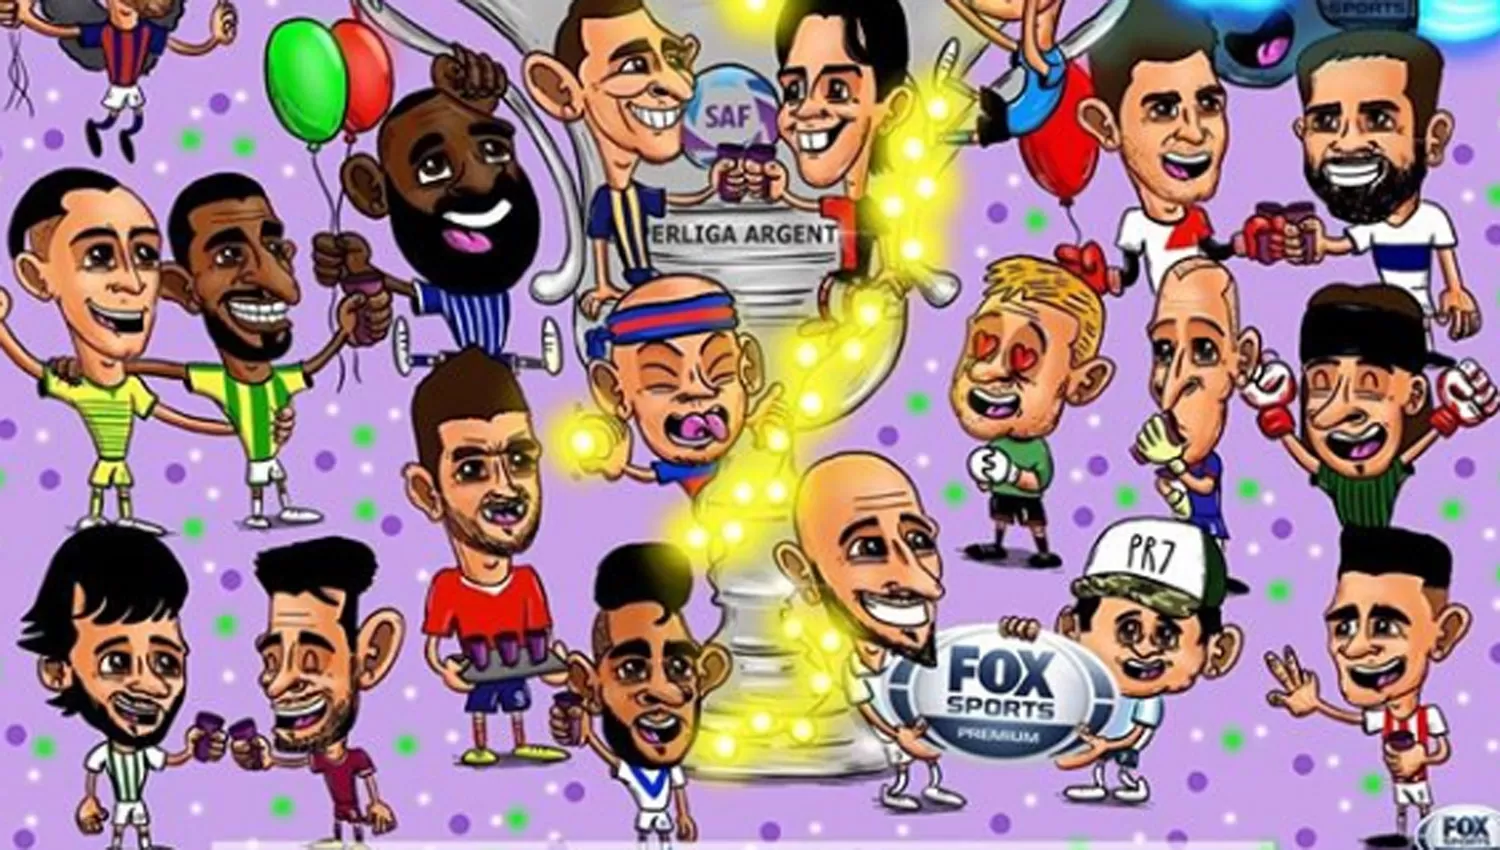 El saludo de fin de año de Fox Sports, con un guiño bien tucumano